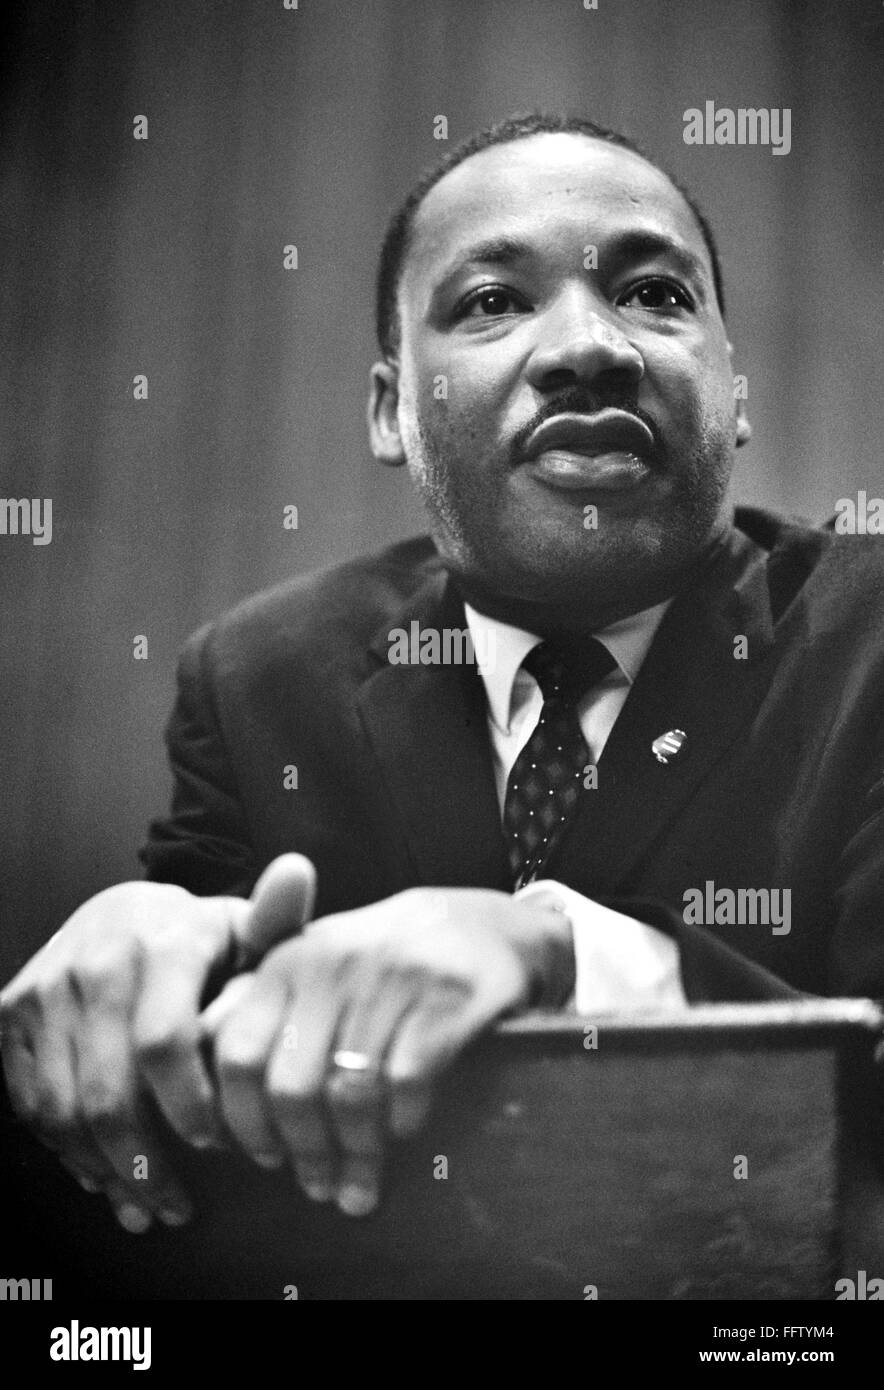 MARTIN LUTHER KING, JR. /N(1929-1968). Les droits civils et religieux américain leader. Photographié par Marion S. Trikosko, 26 mars 1964. Banque D'Images